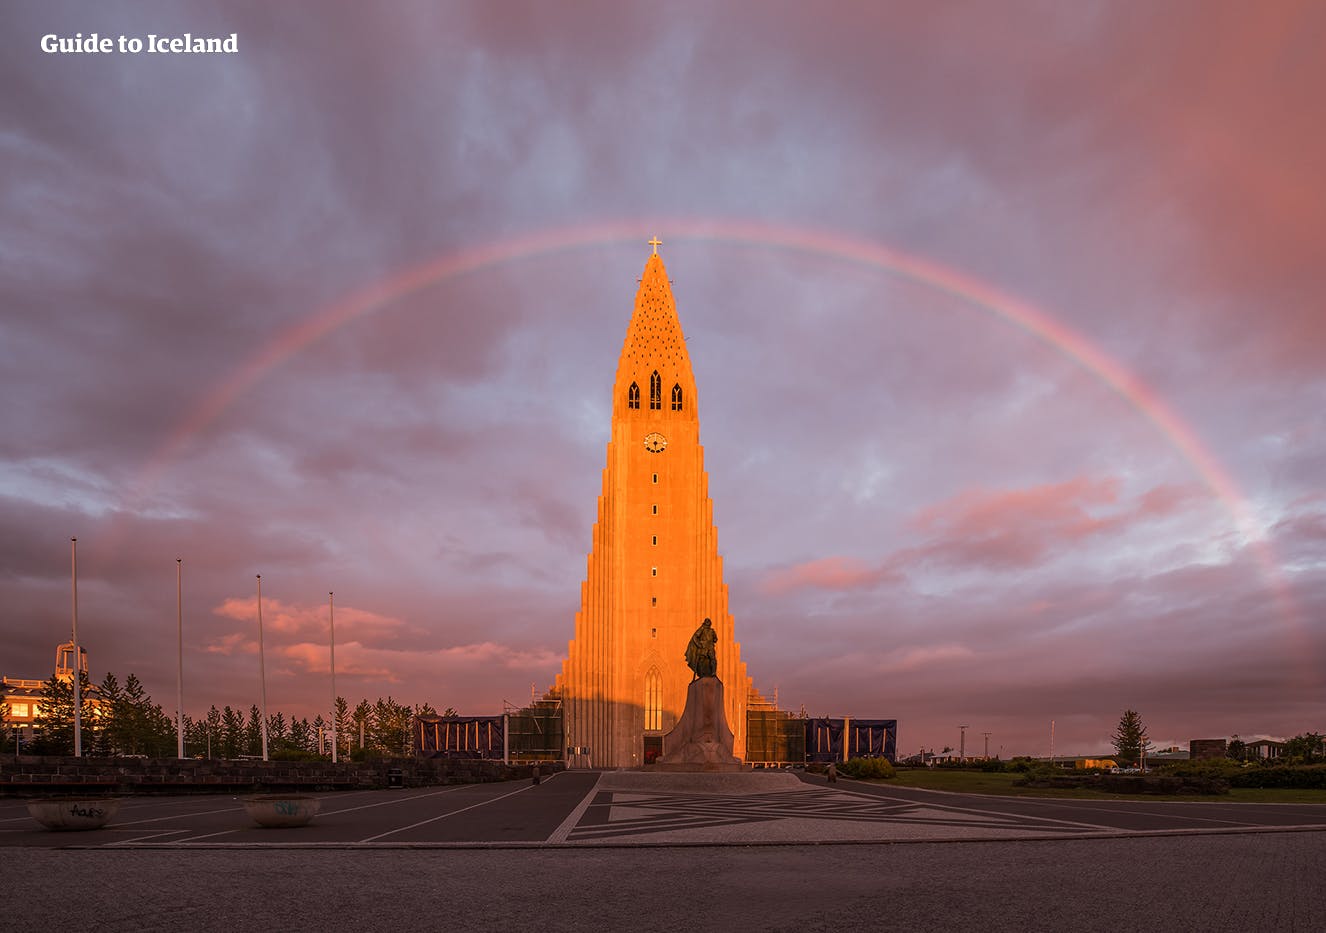 哈尔格林姆斯大教堂是冰岛首都雷克雅未克的地标景点